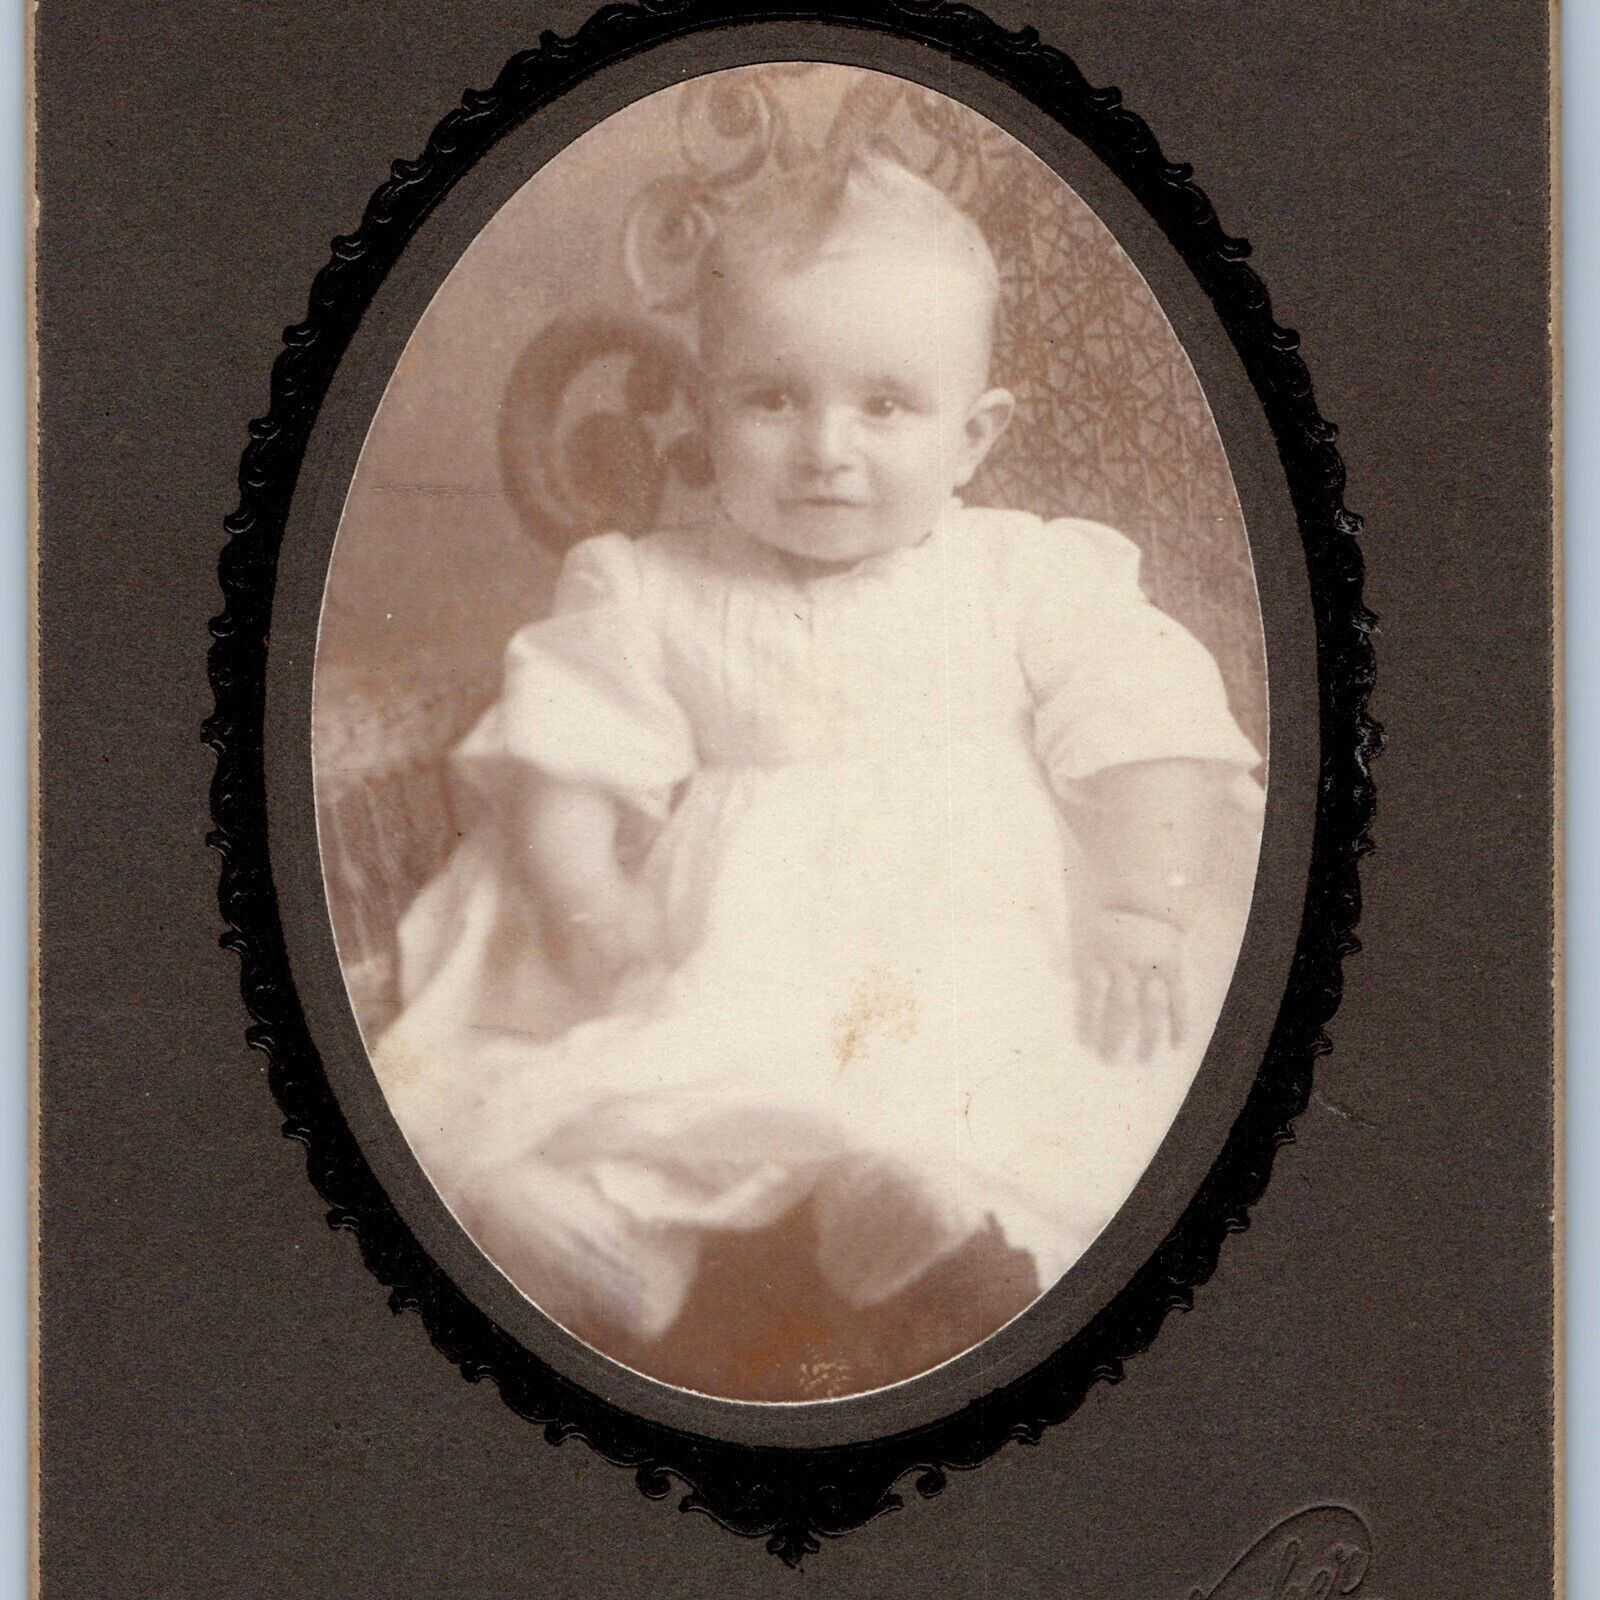 c1900s Waverly, Iowa Cute Kewpie Hair Baby Cabinet Card Photo Gallagher IA B1